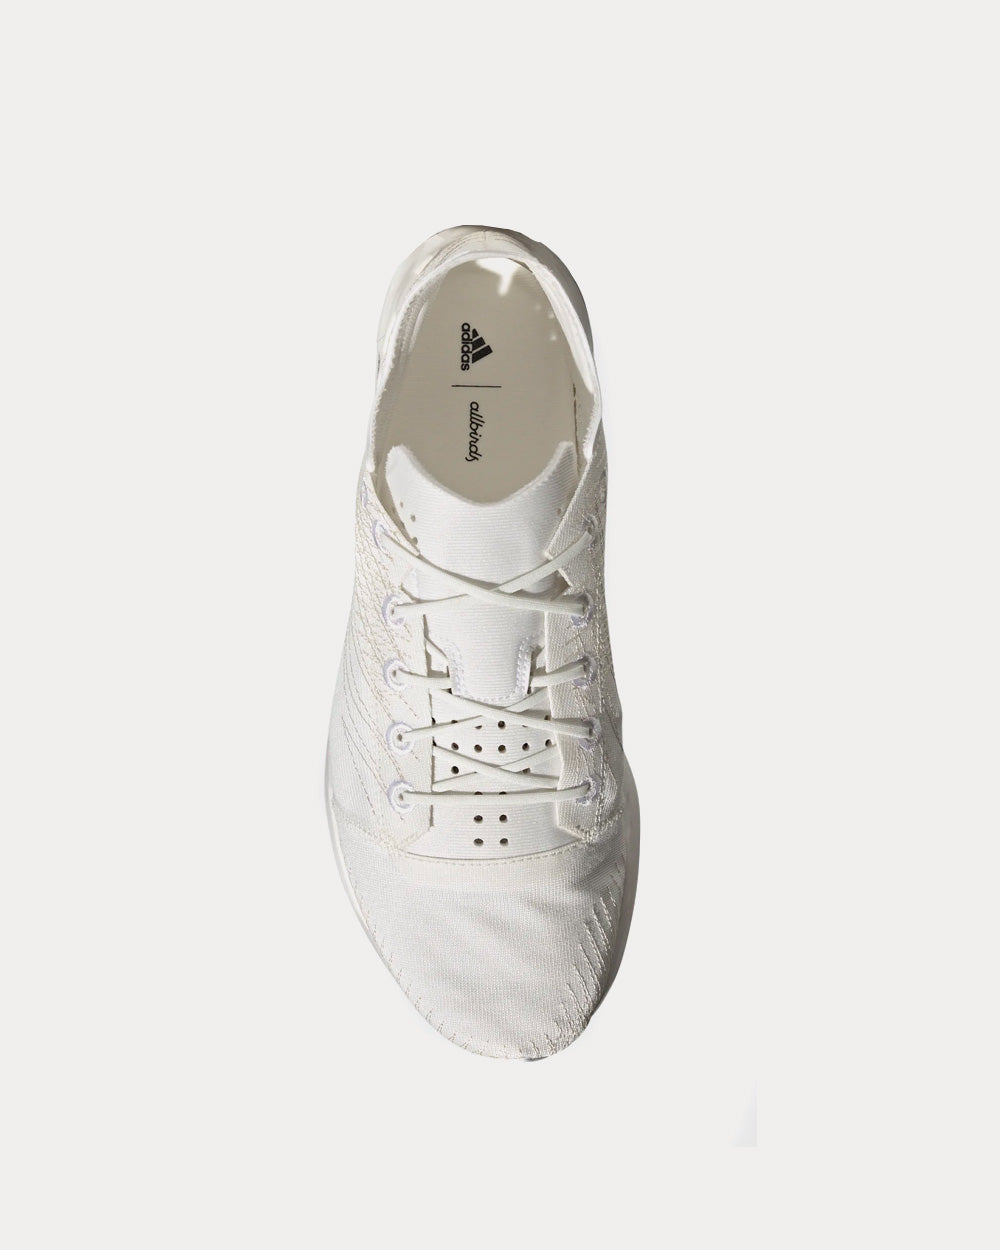 Adidas x Allbirds - FutureCraft Footprint  Non Dyed / Cloud White / Ecru Tint Running Shoes